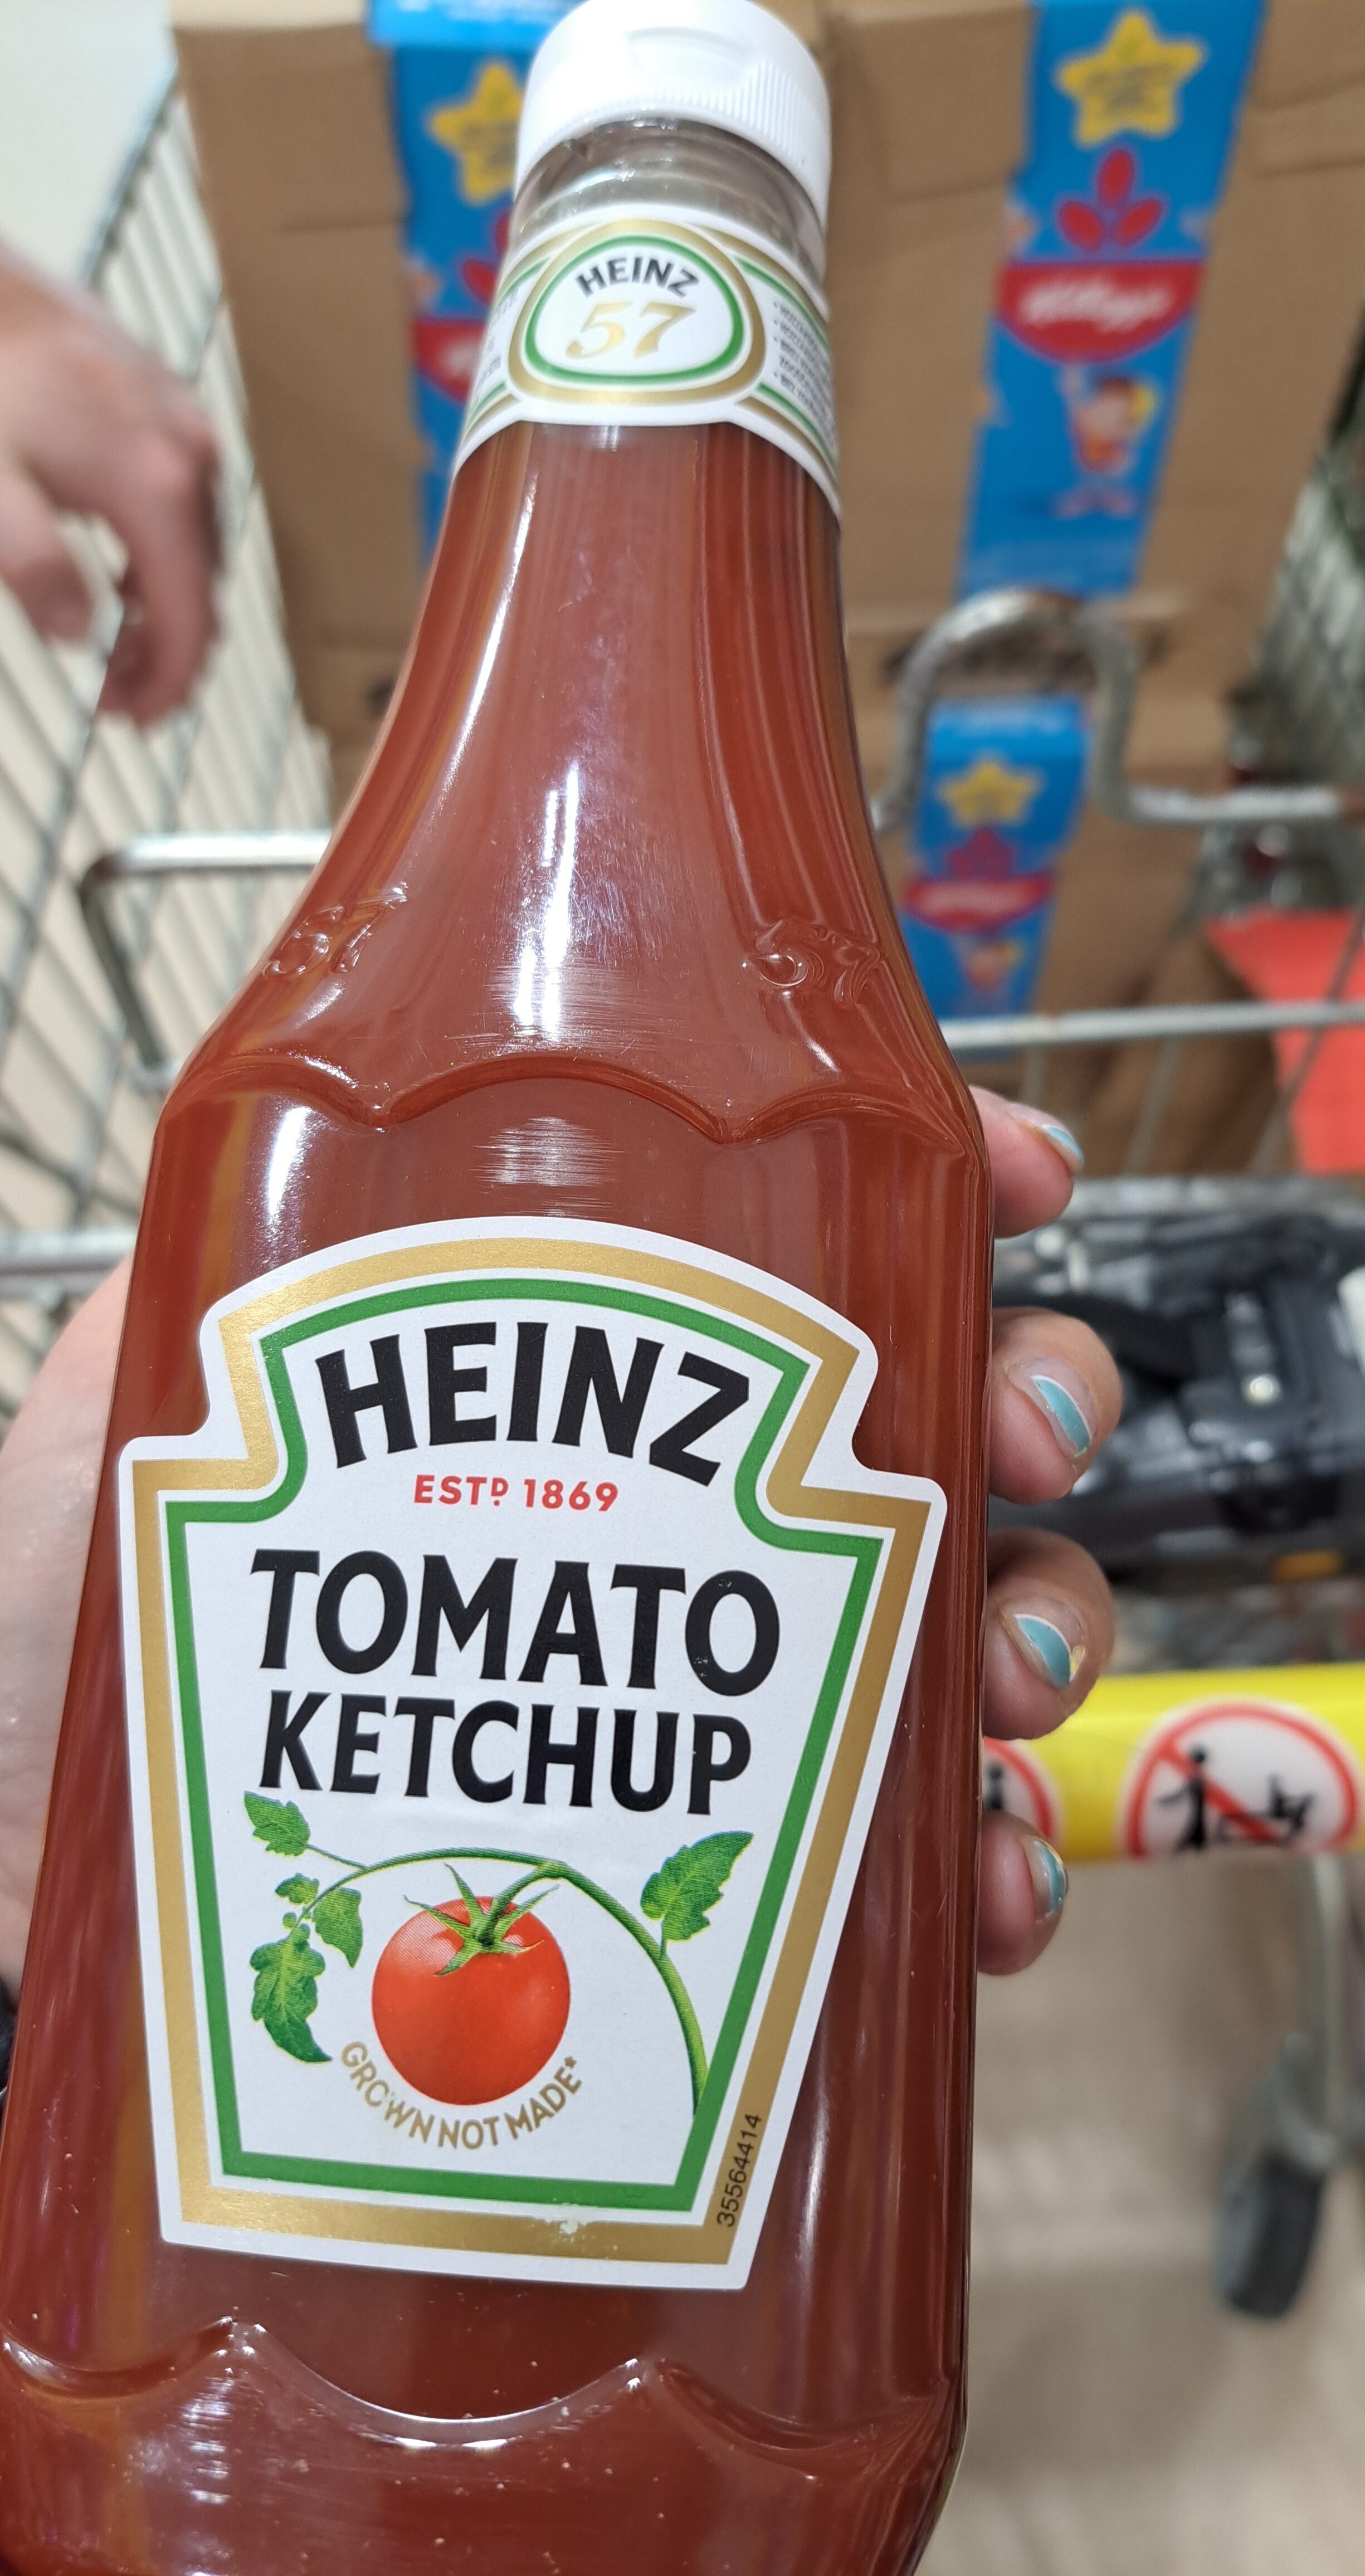 Heinz ketchup - Product - en